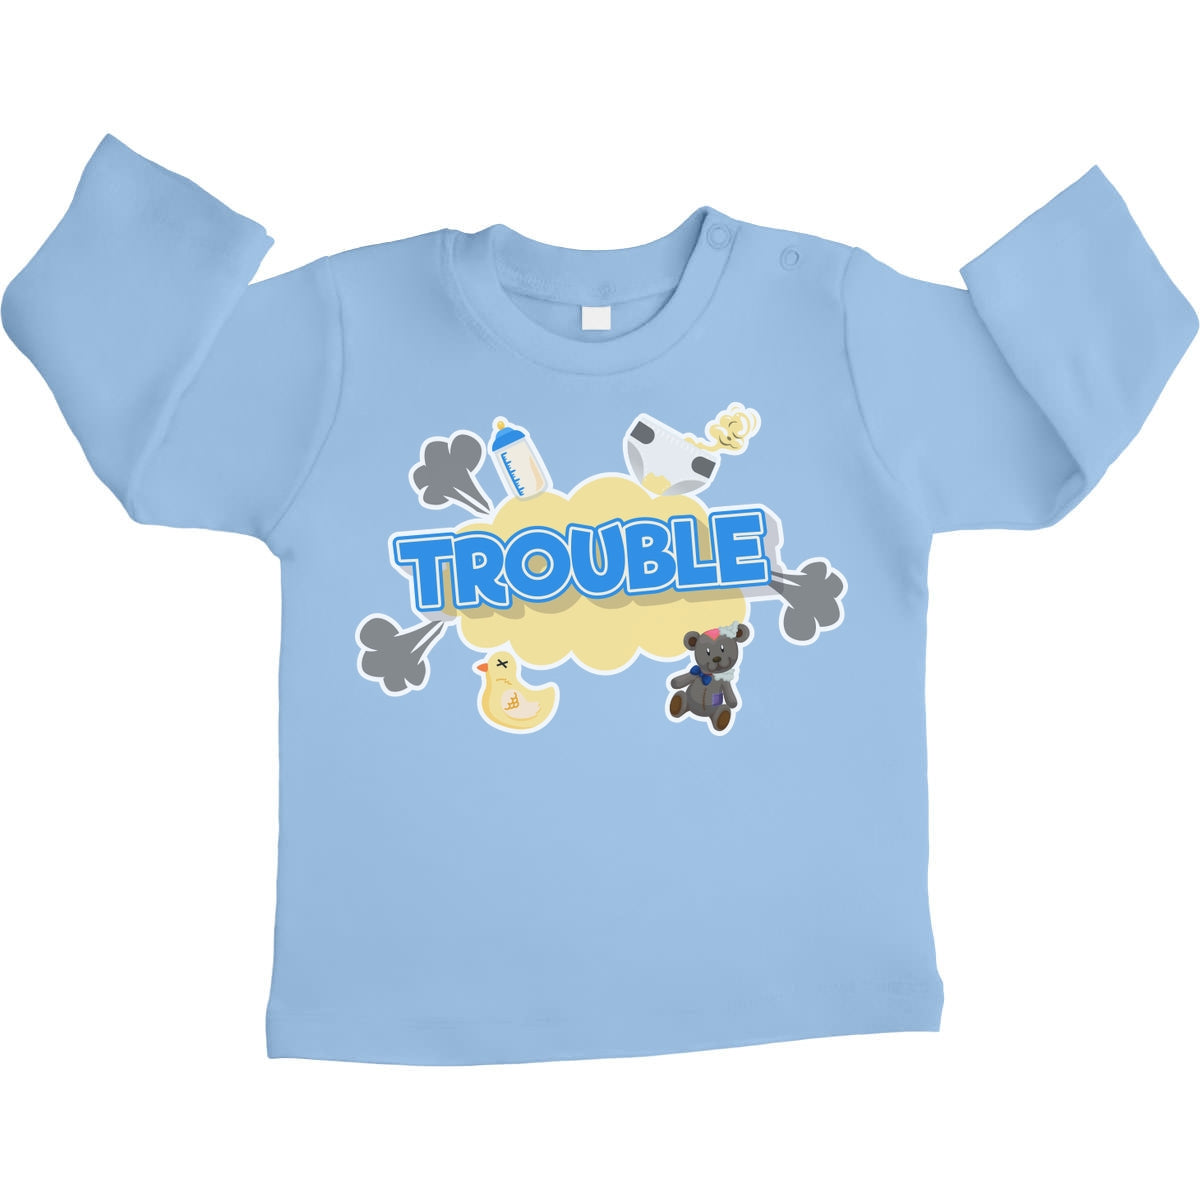 Trouble - Lustiger Spruch für Babies Unisex Baby Langarmshirt Gr. 66-93